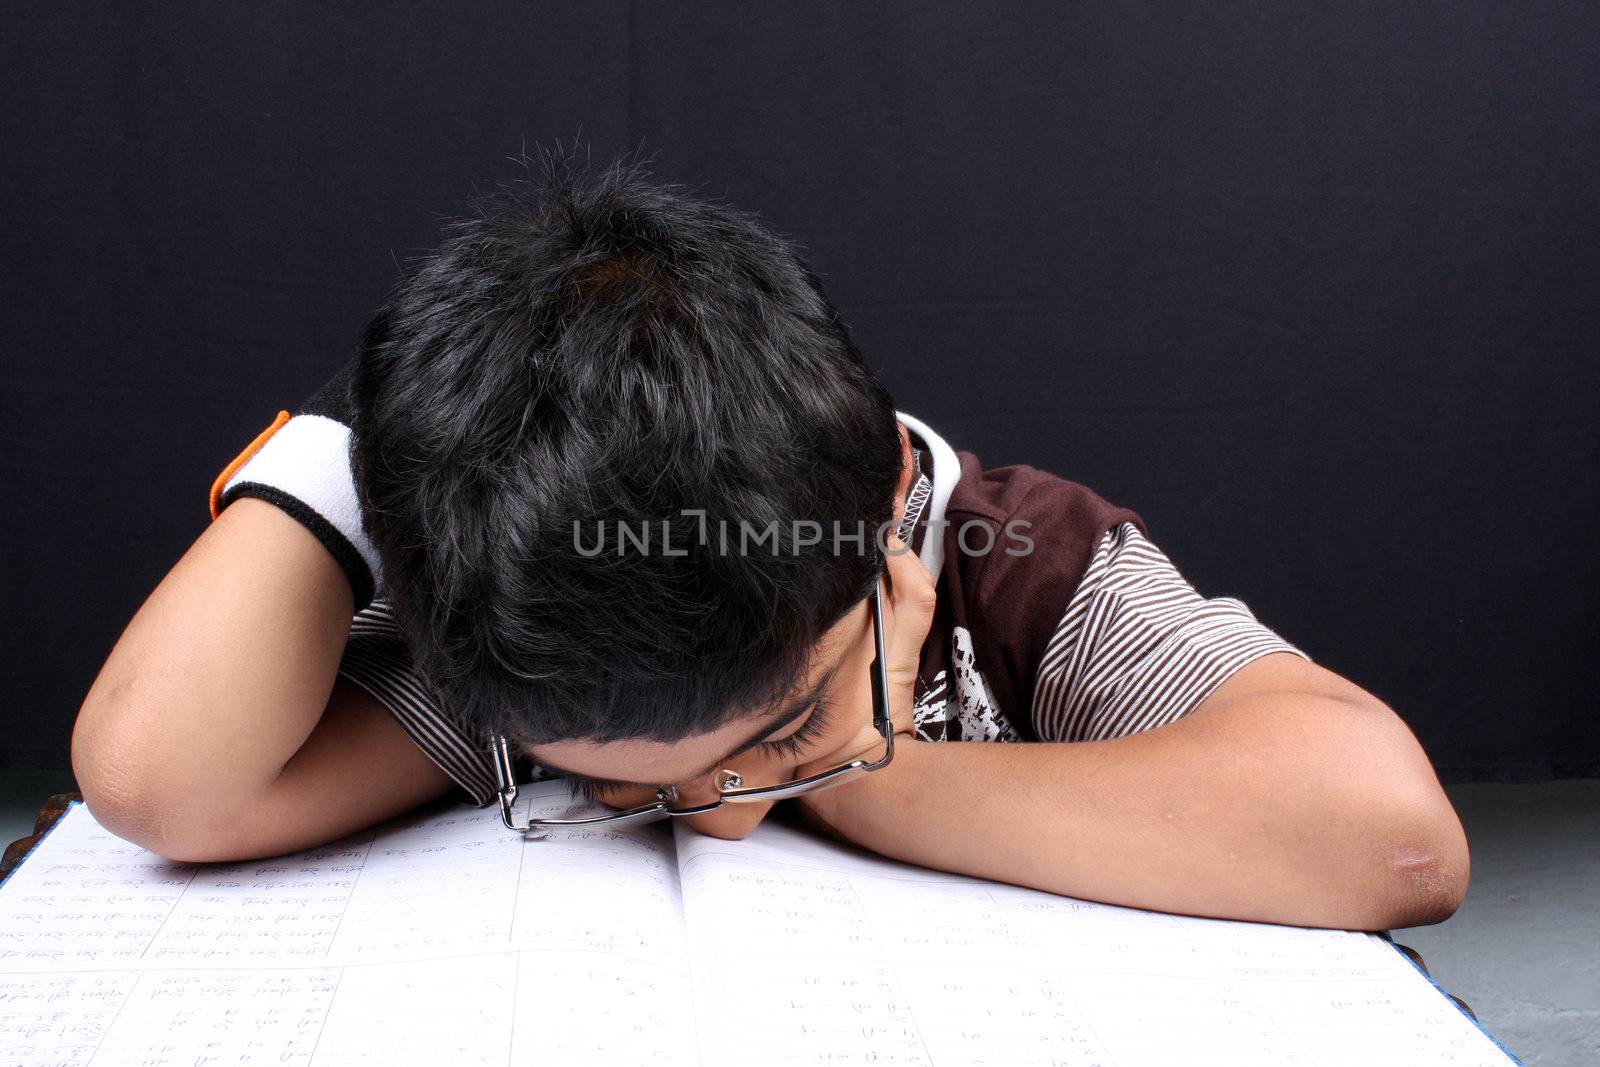 A little boy fallen asleep after tired of studying.